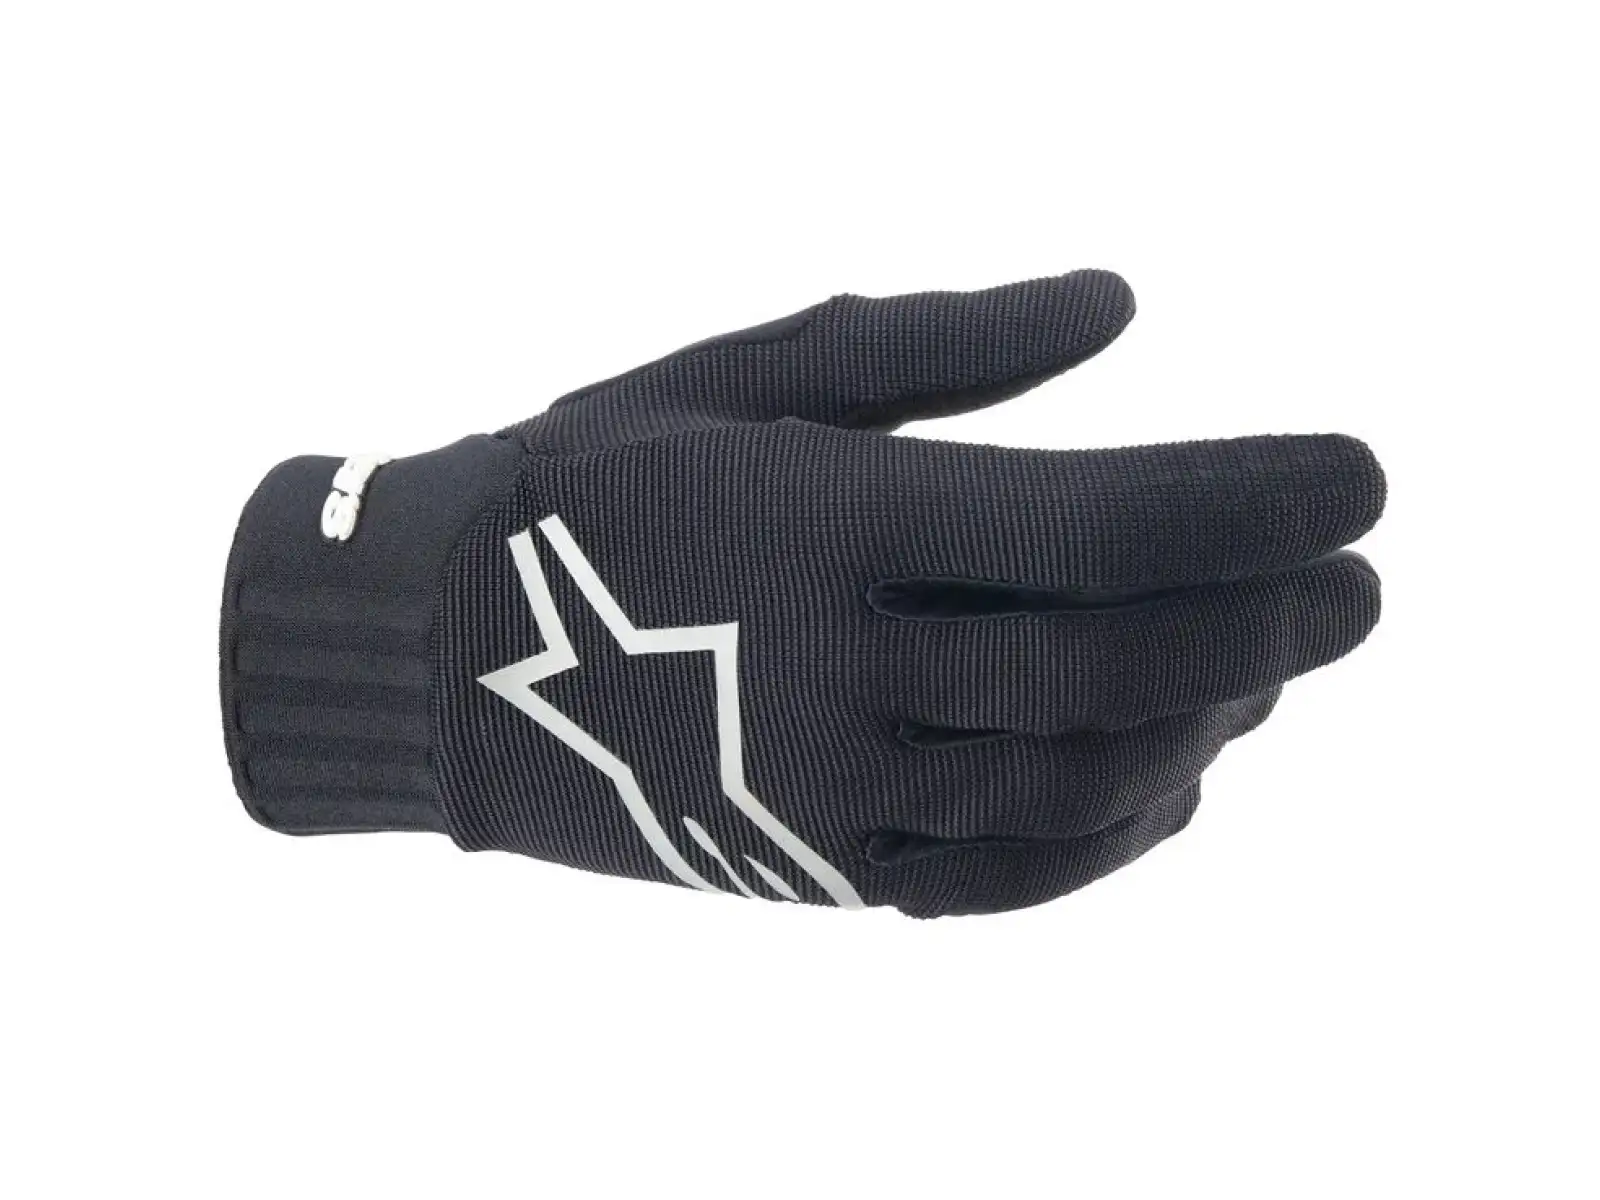 Alpinestars Alps V2 rukavice černá